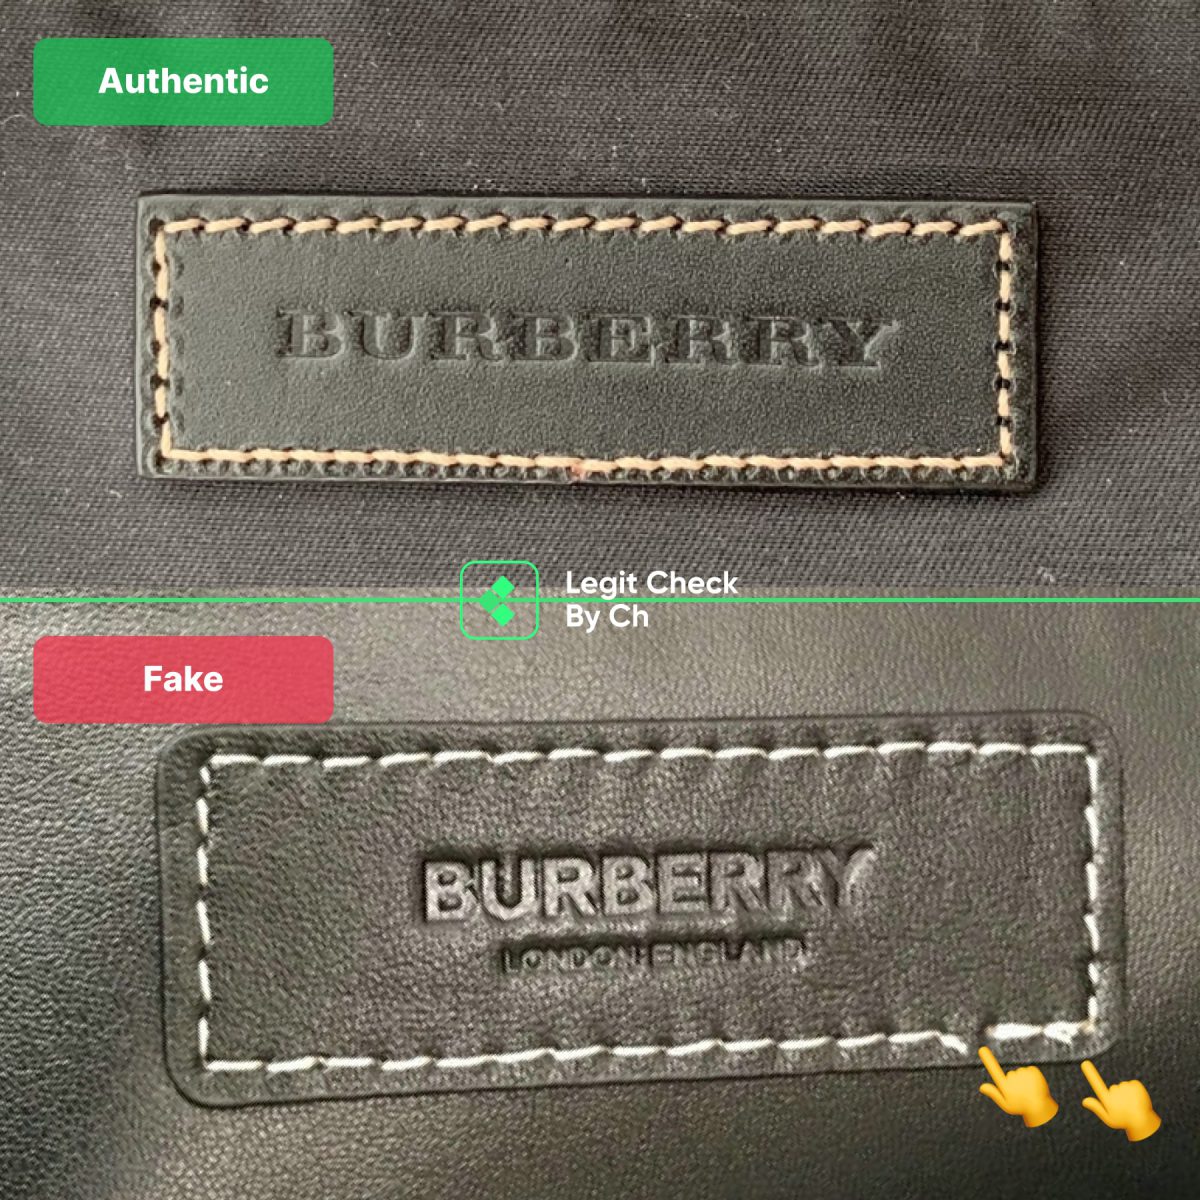 Burberry Bag Interior Label